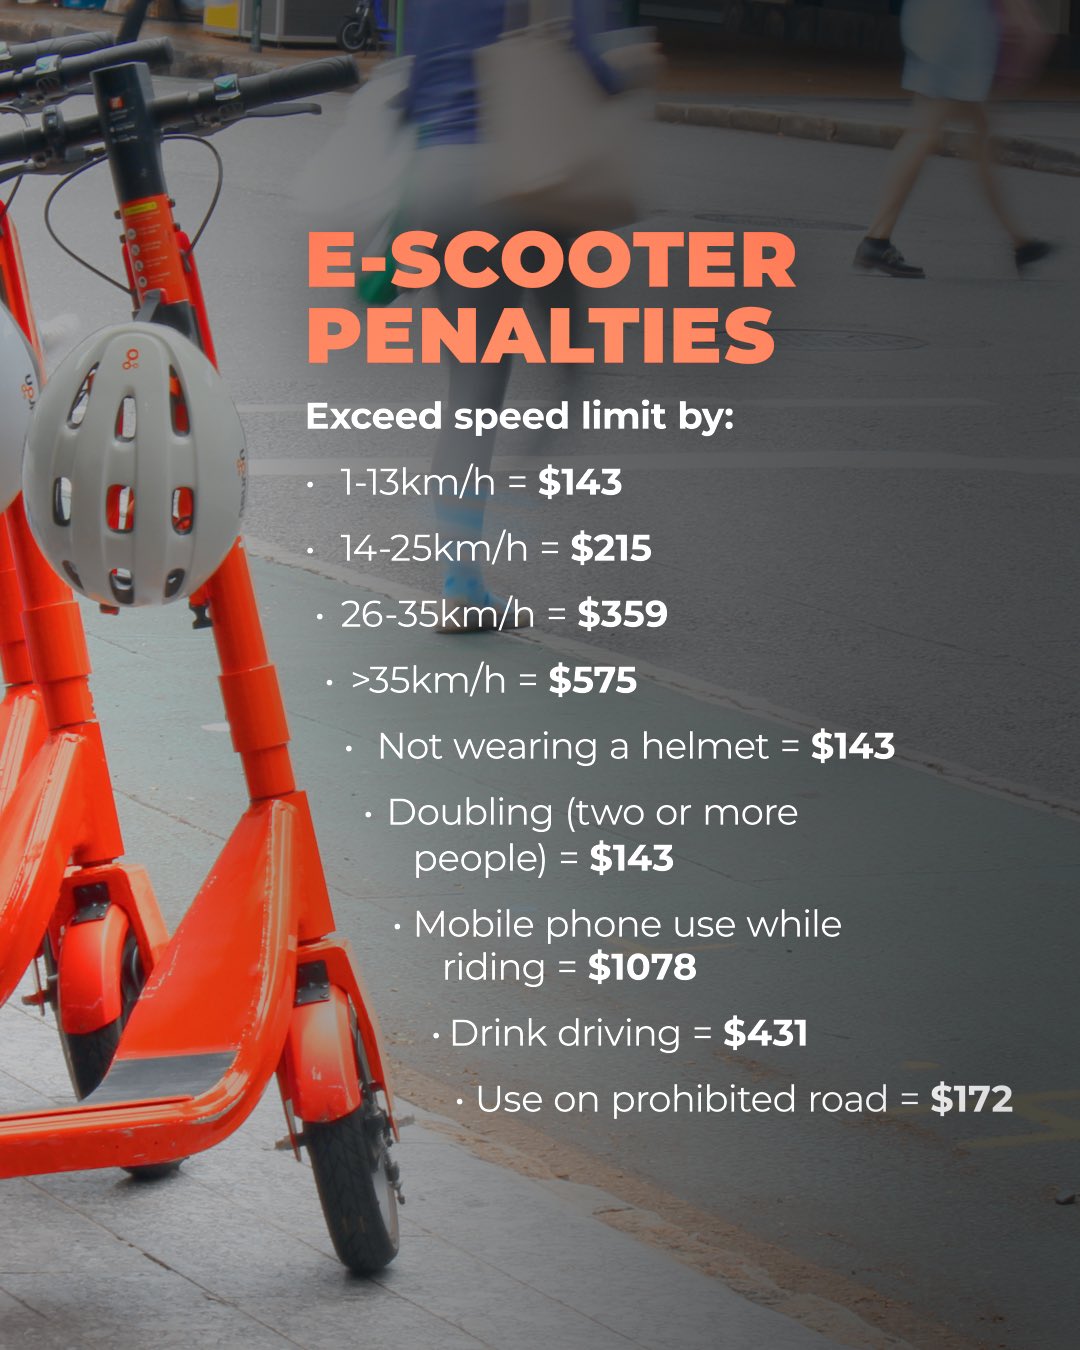 Un e-scooter naranja con una lista de sanciones que incluyen exceder el límite de velocidad, no usar casco y conducir bajo los efectos del alcohol.